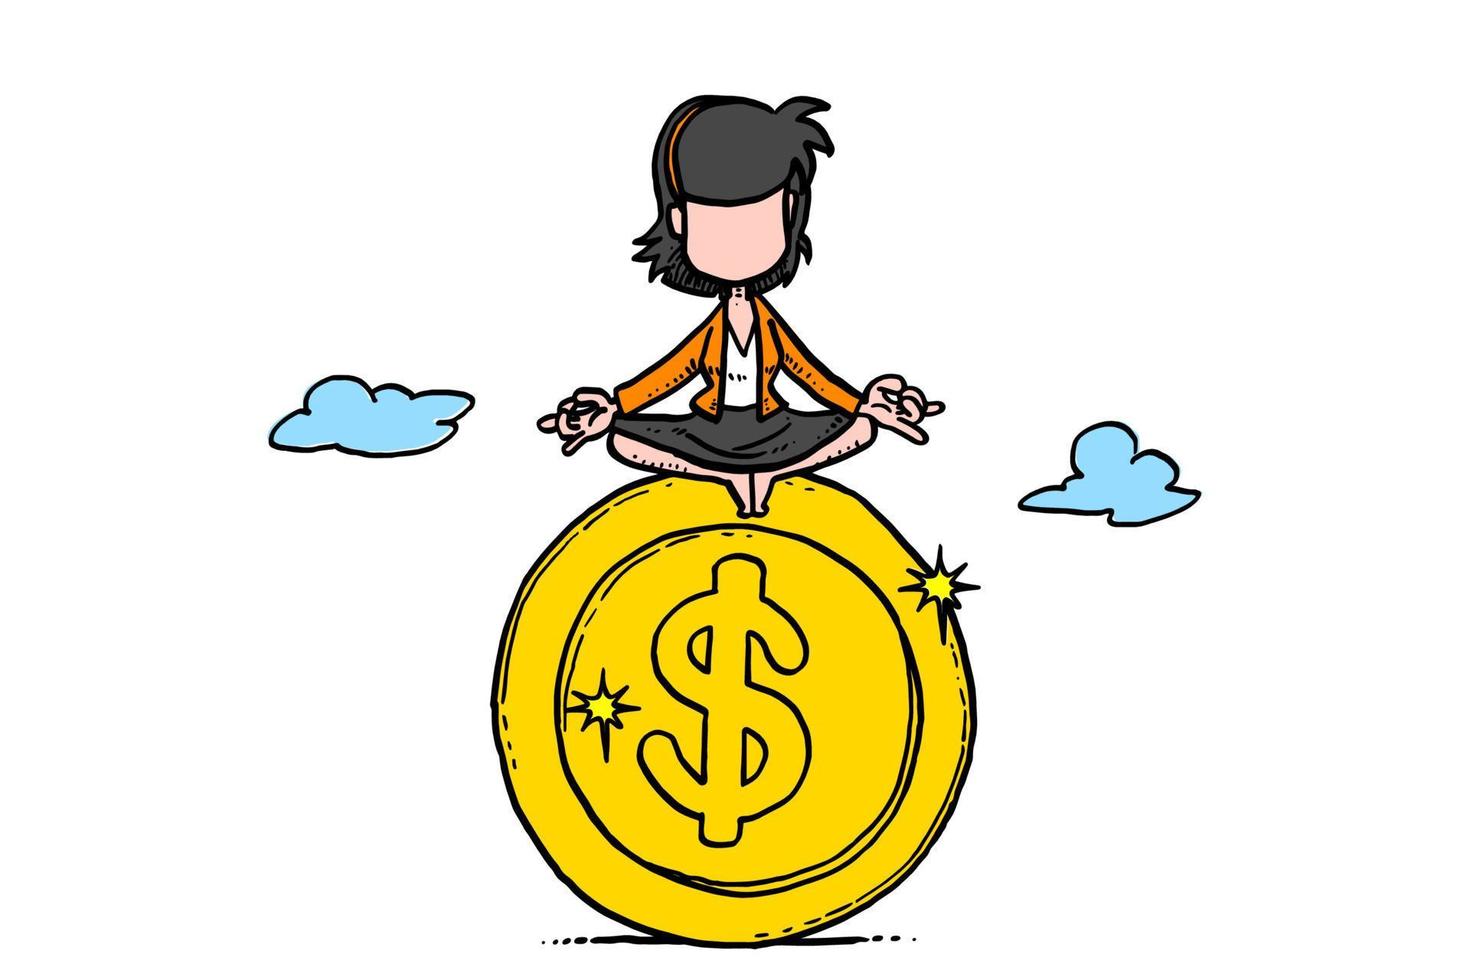 donna d'affari seduta sopra la moneta d'oro. concetto di denaro e gestione patrimoniale. disegno dell'illustrazione di vettore del fumetto su fondo isolato